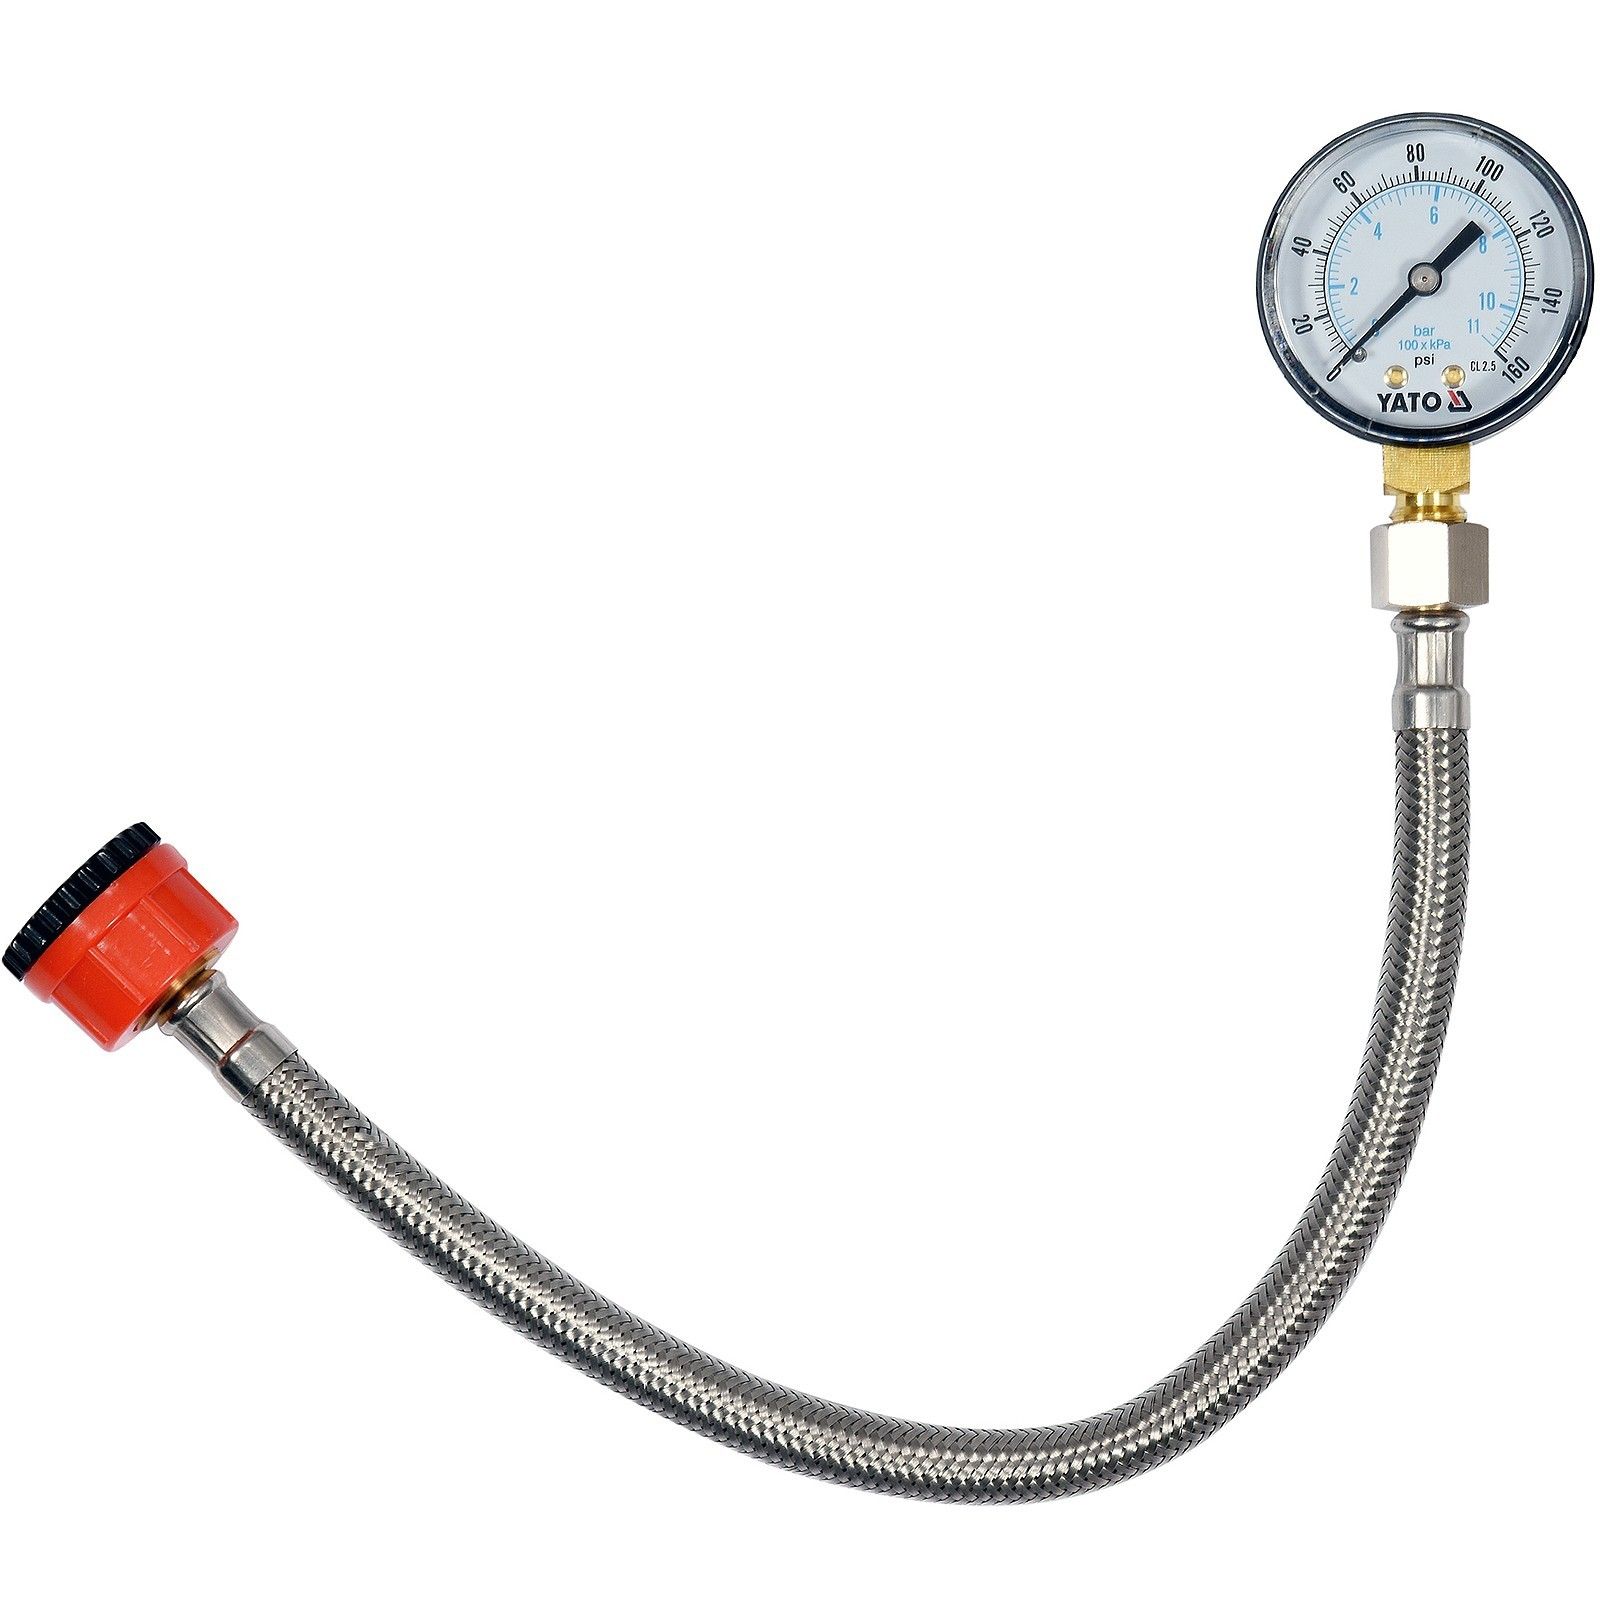 YATO Wasserdruckmesser Druckmesser Manometer Wasserdruckprüfung YT-24790 Neu